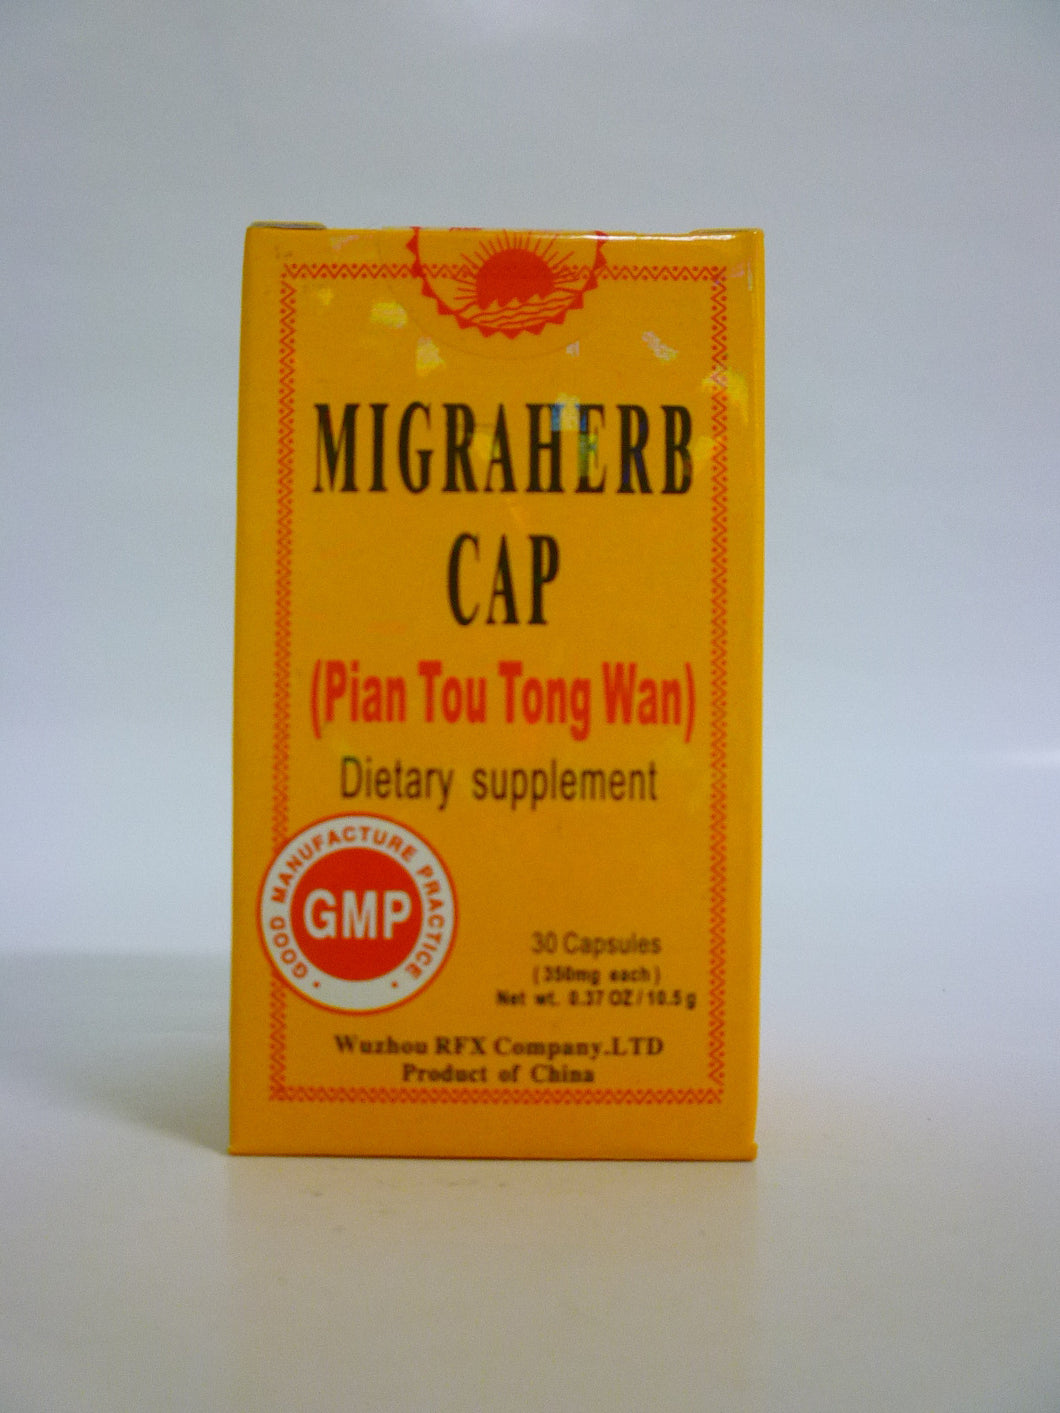 Pian Tou Tong Wan (Migraherb Cap)